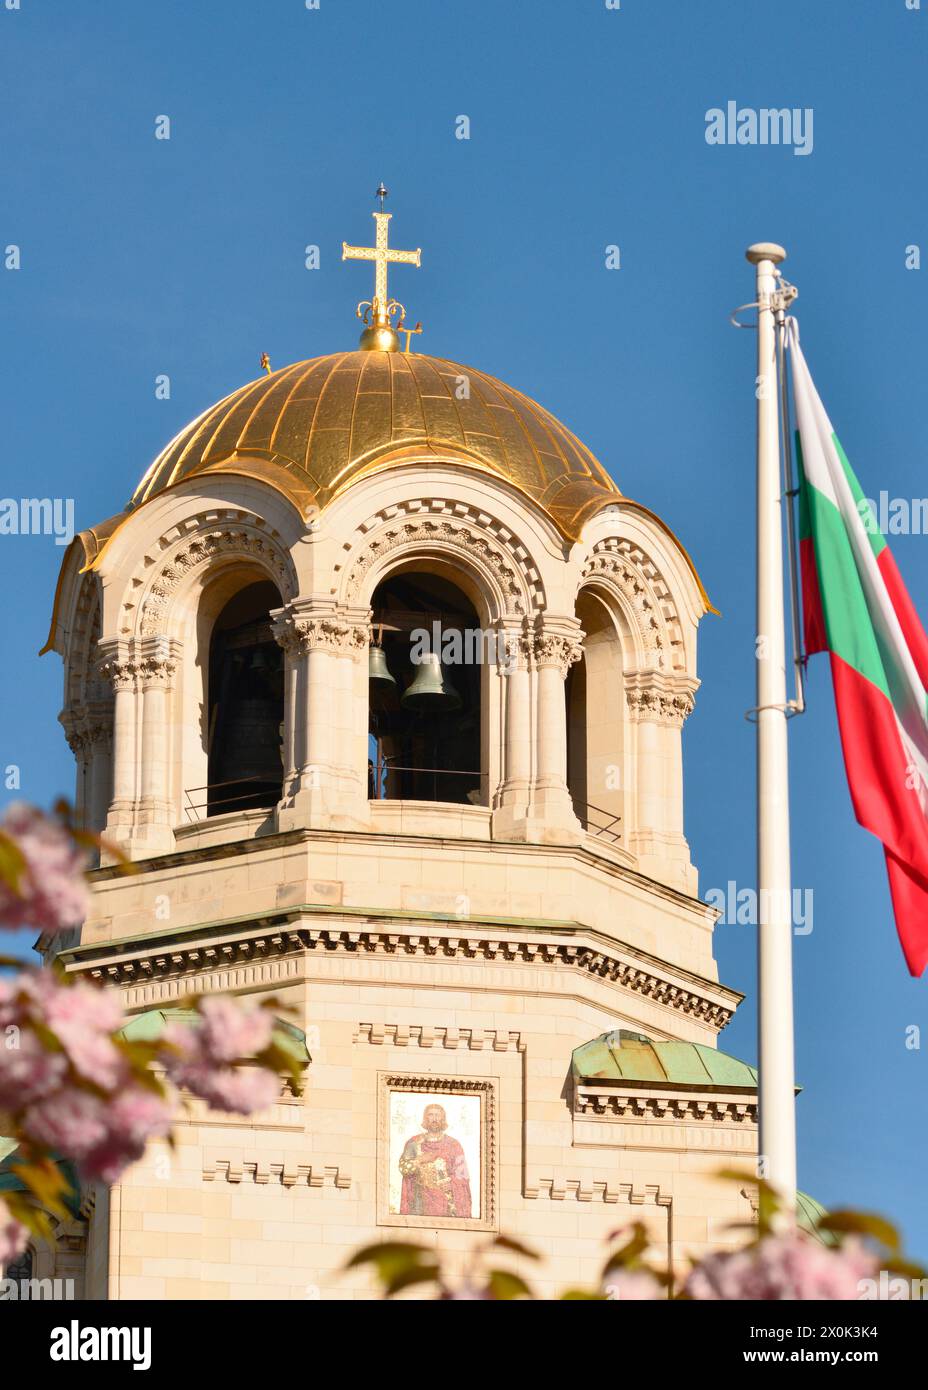 St Cattedrale Alexander Nevsky cupola dorata e bandiera nazionale bulgara a Sofia Bulgaria; Europa orientale, Balcani, spazio copia UE Foto Stock